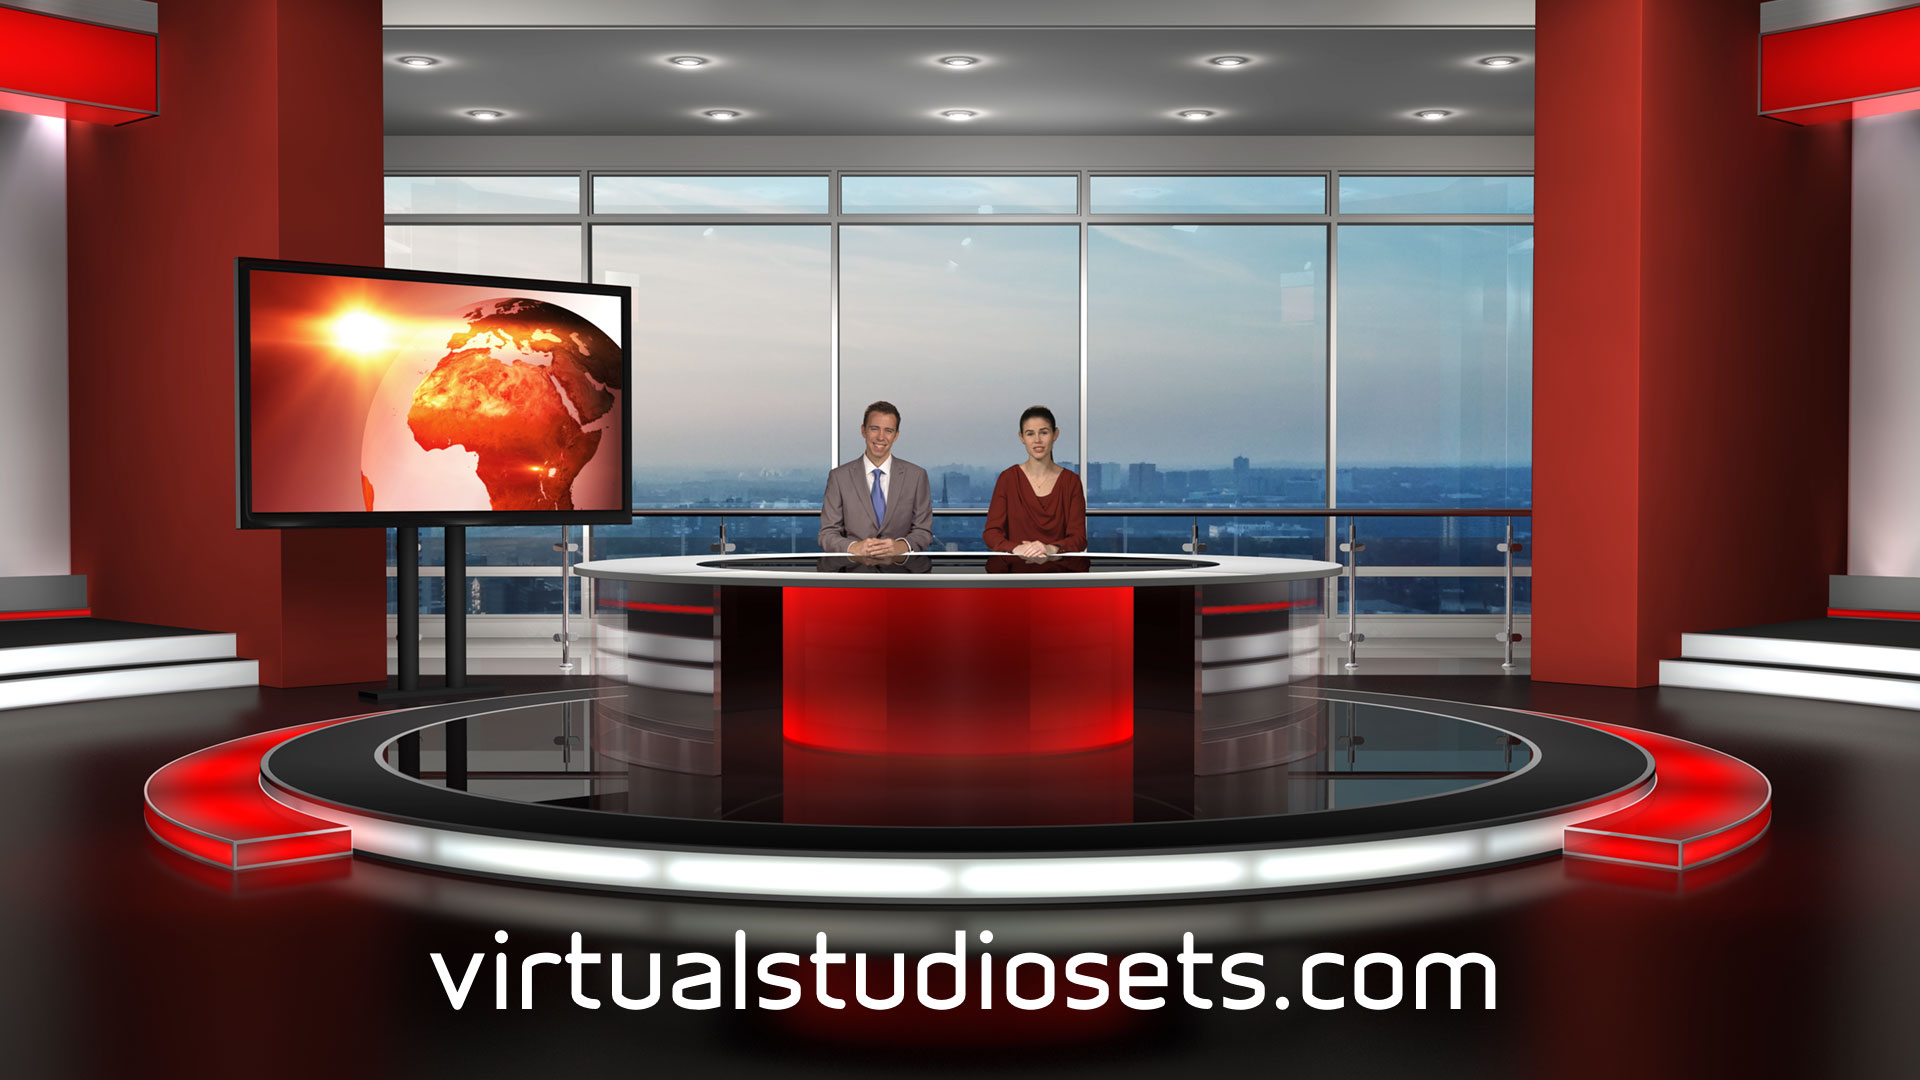 Free Virtual Studio Set Download Virtualstudiosets Com